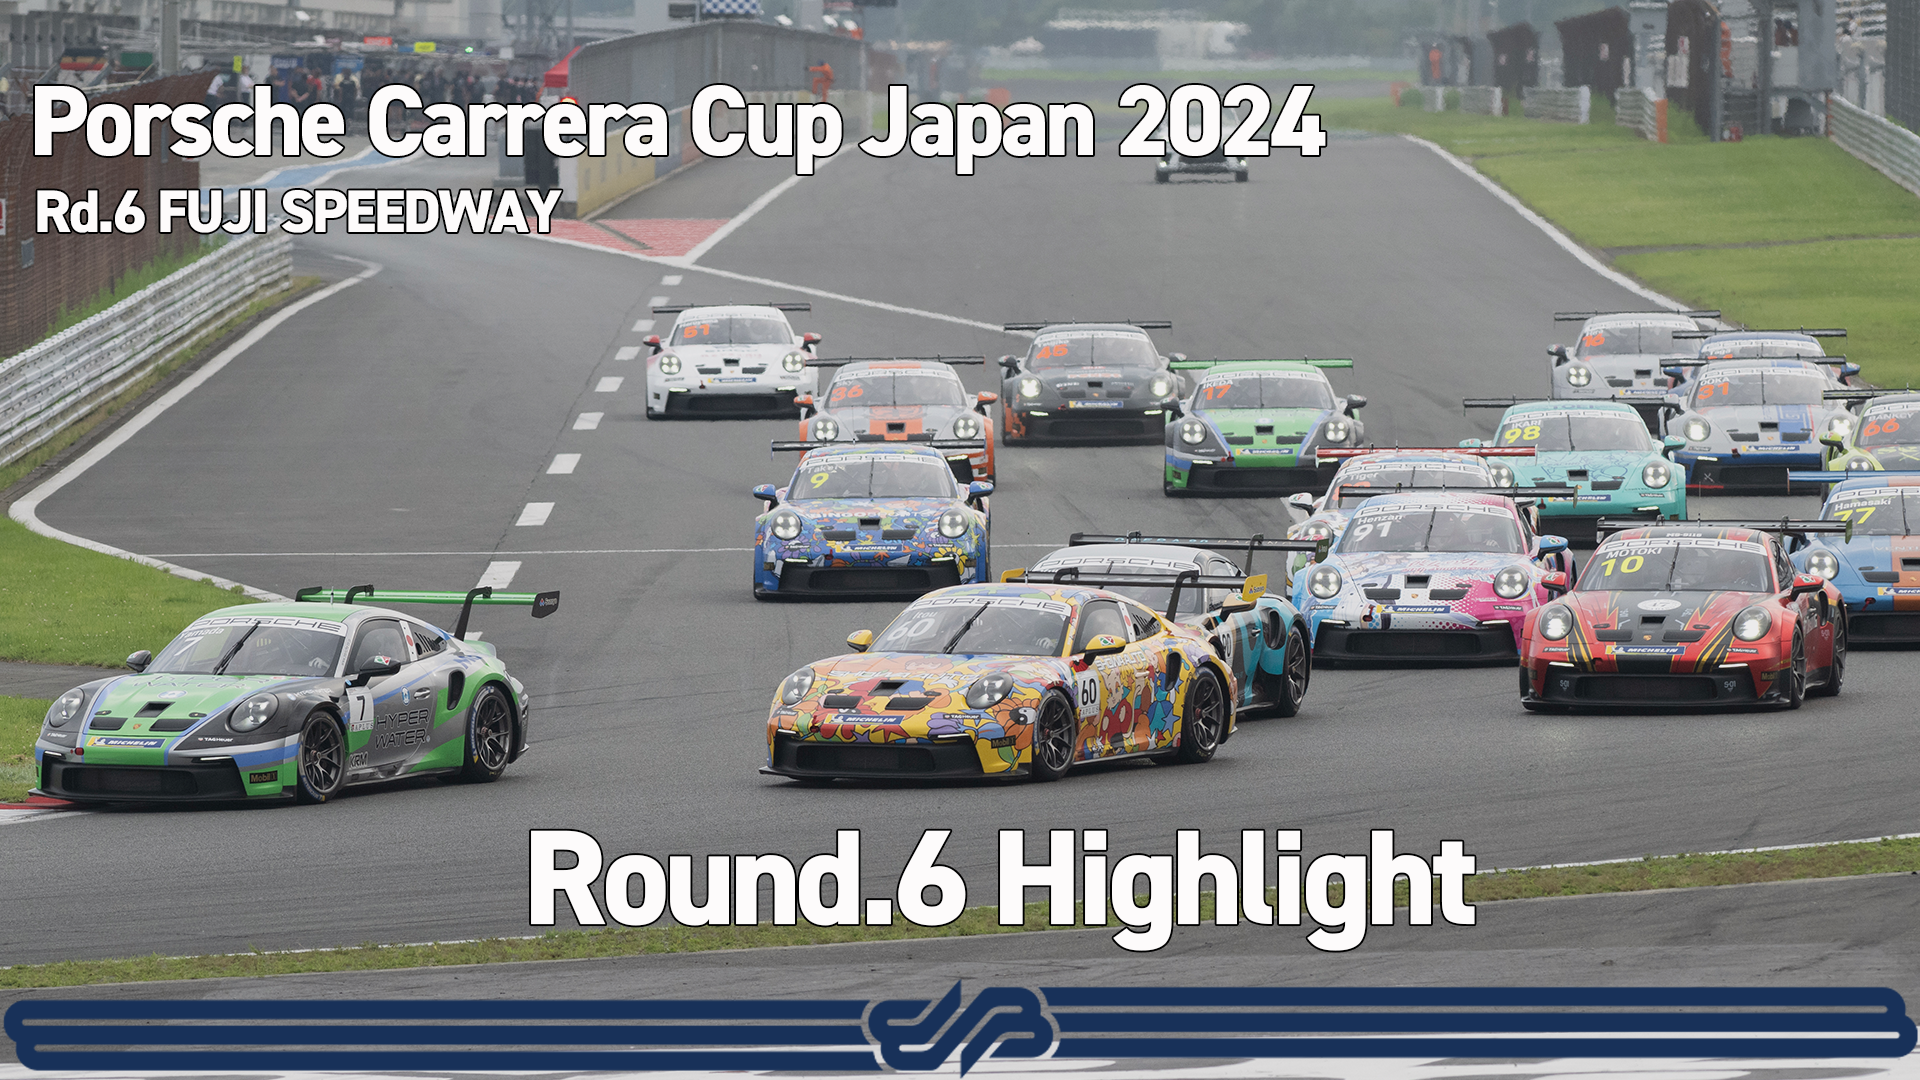 【Porsche Carrera Cup Japan 2024】Rd.6 Highlight